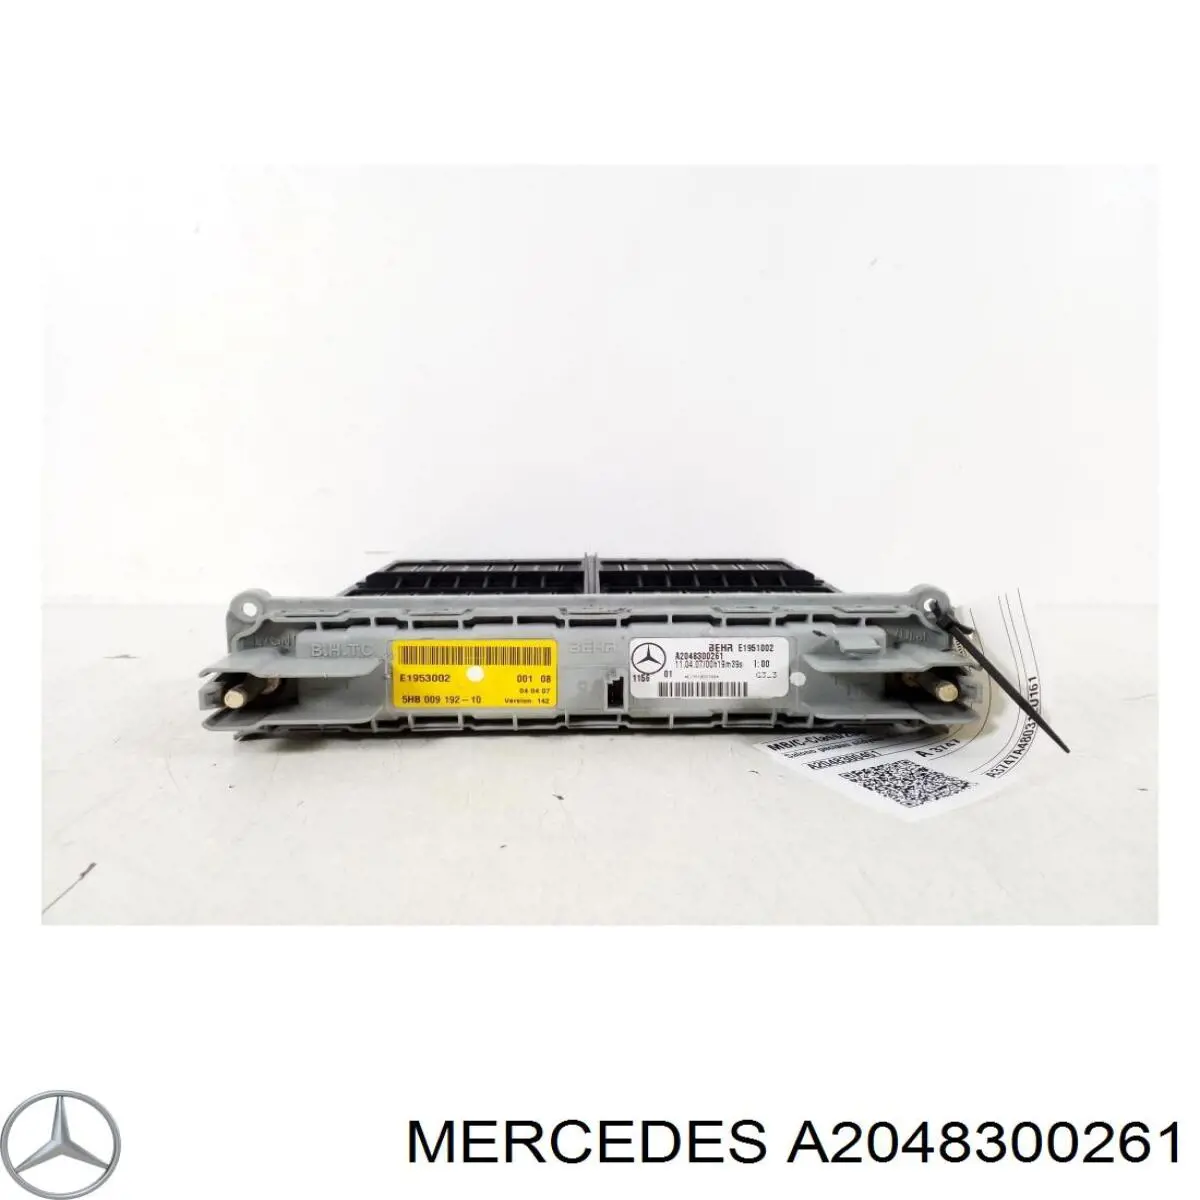 A2048300261 Mercedes радиатор печки (отопителя задний)